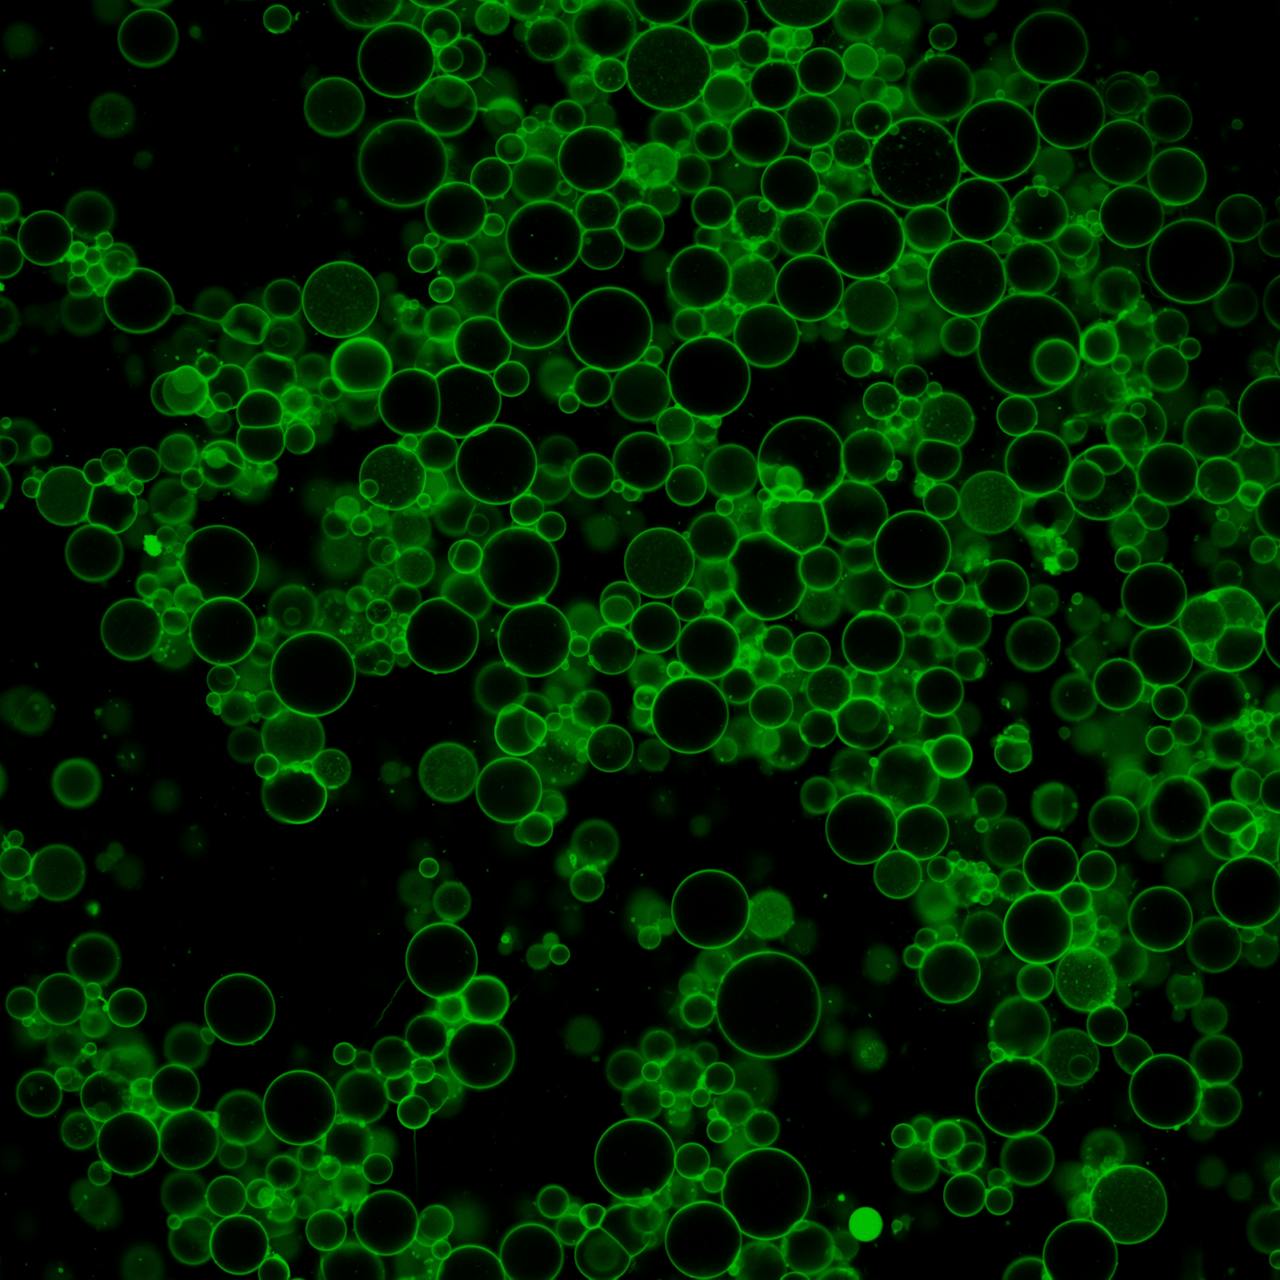 Groene bubbels (liposomen) op een zwarte achtergrond.